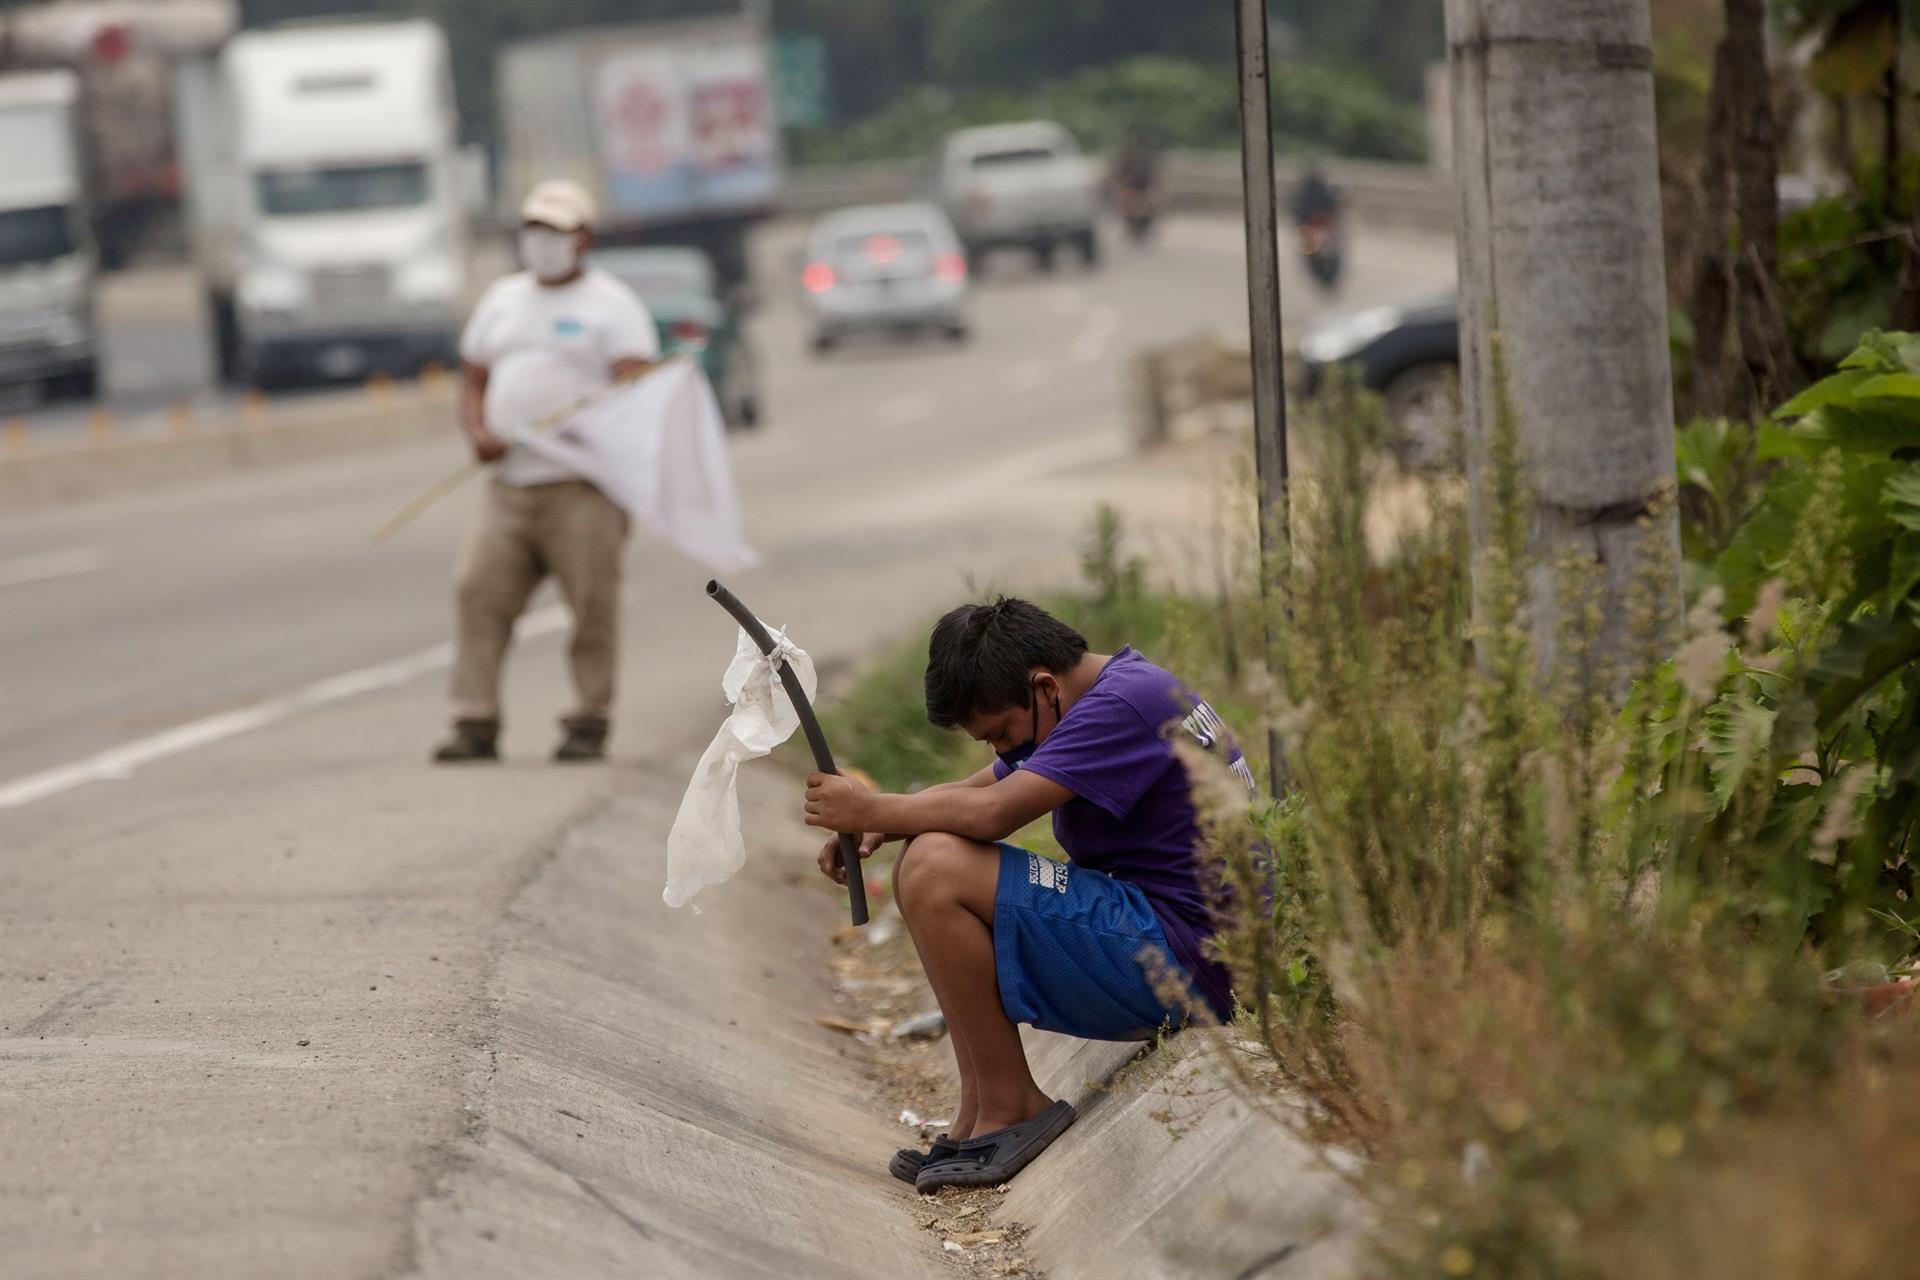 Un niño ondea una bandera blanca en la carretera pidiendo ayuda por hambre debido a la crisis economica provocada por el coronavirus en Guatemala. Efeagro/Esteban Biba